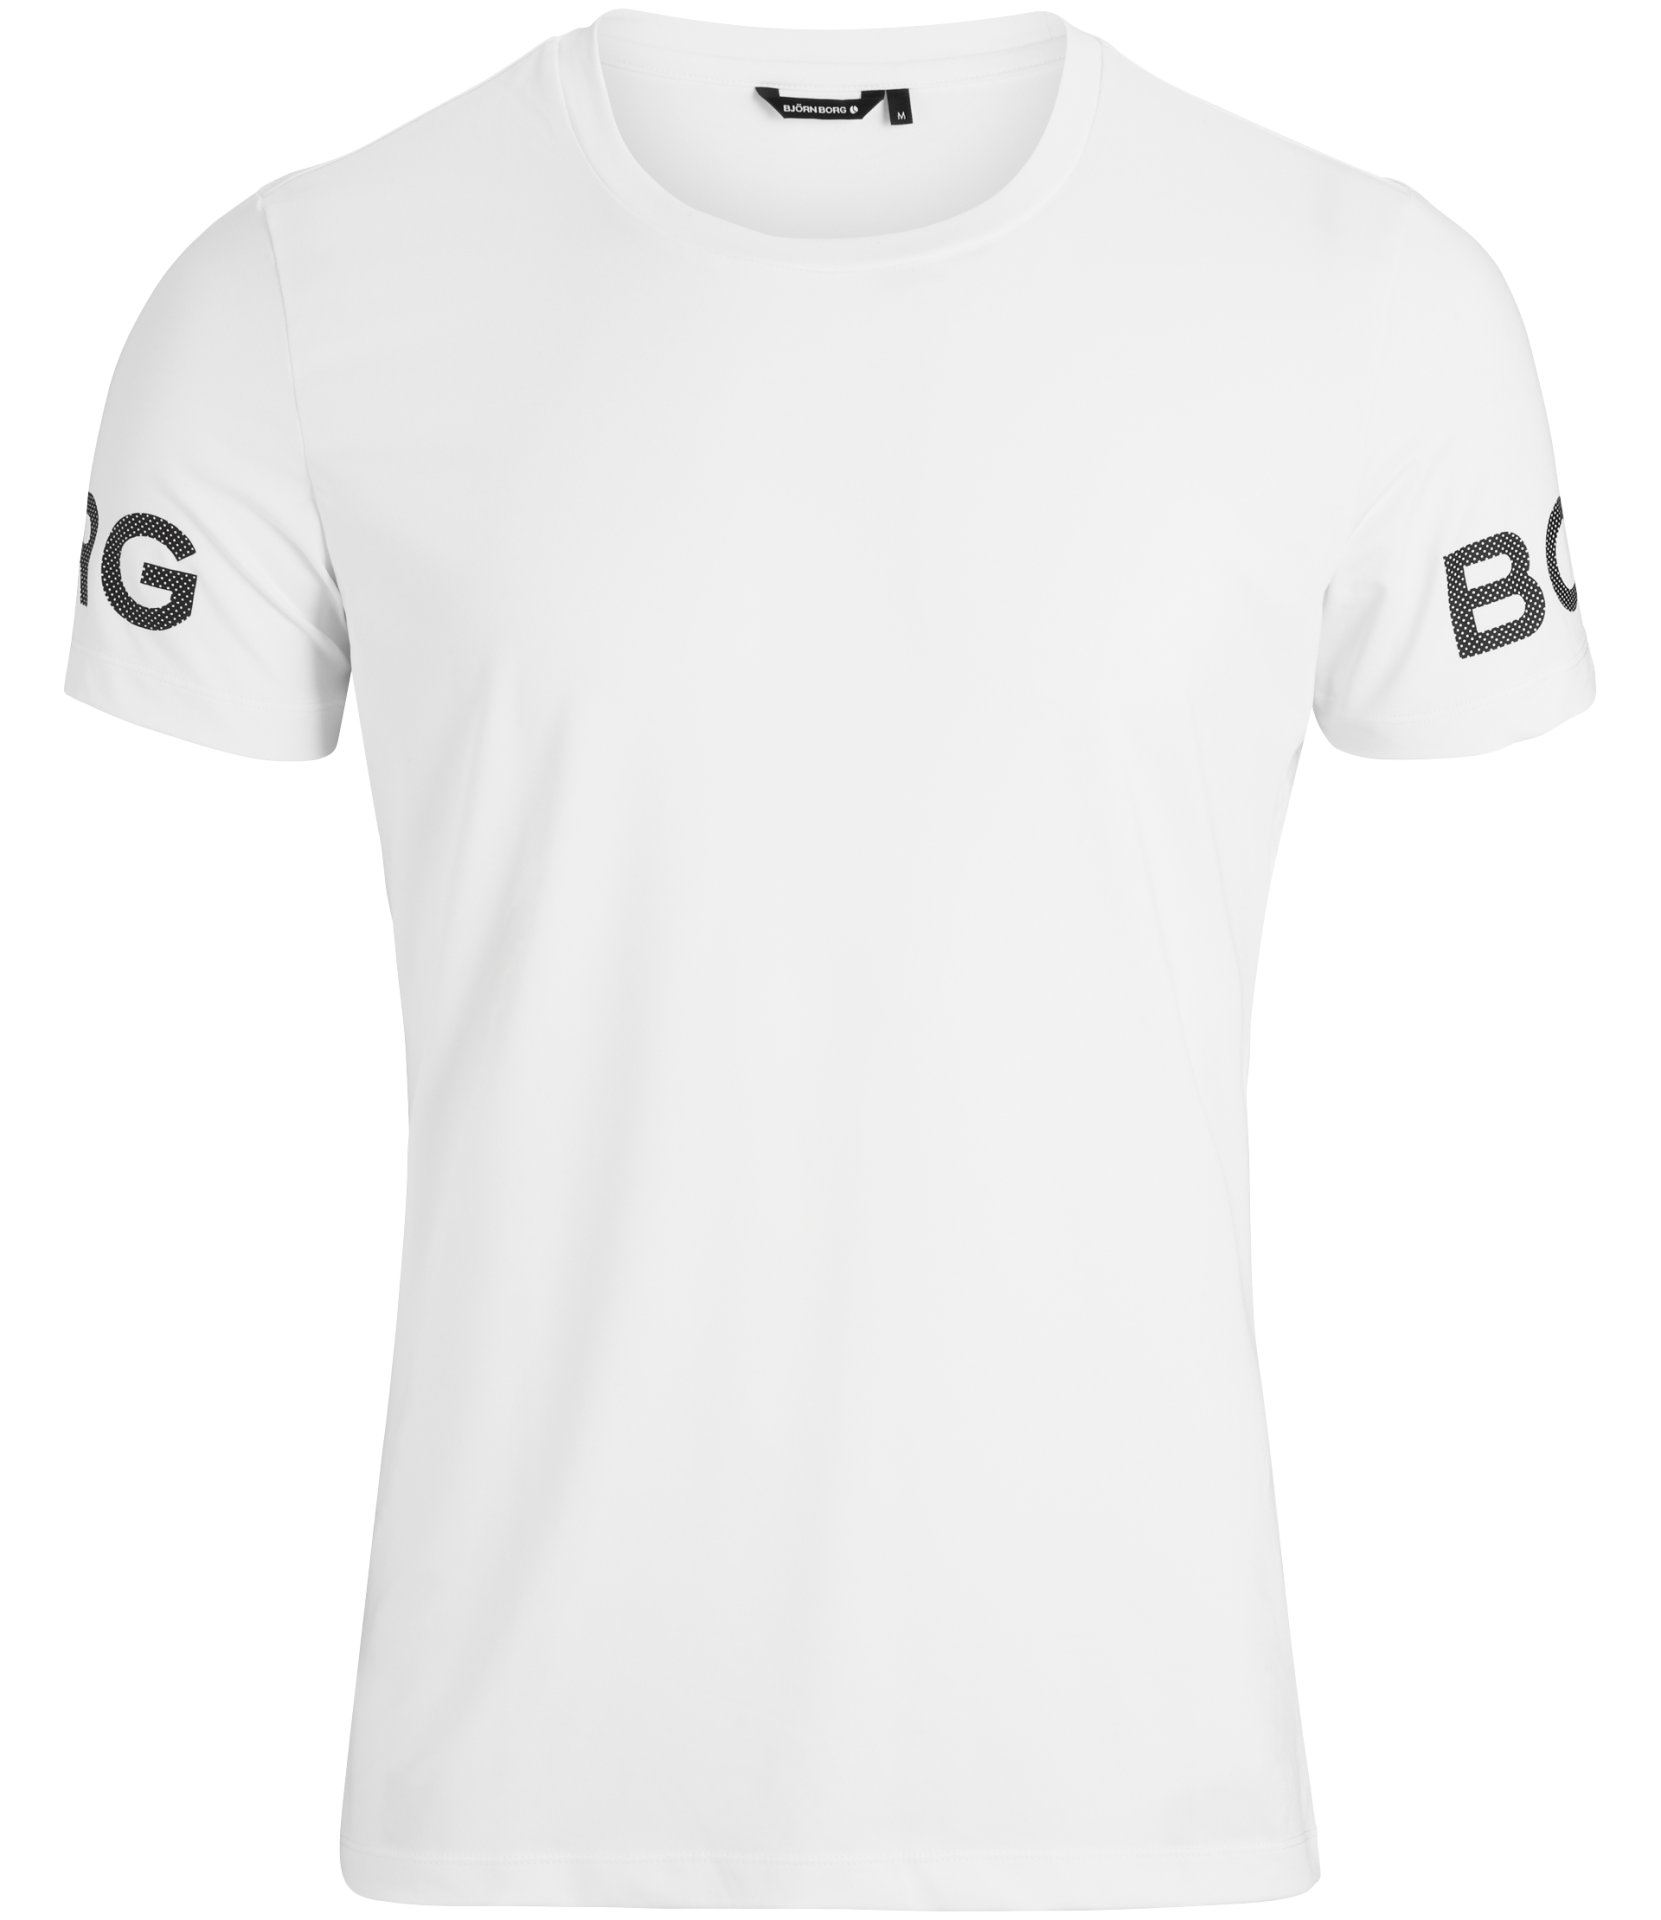 Ανδρικά/Ρούχα/Αθλητικά/T-shirt BJORN BORG - Ανδρικό t-shirt BJORN BORG λευκό